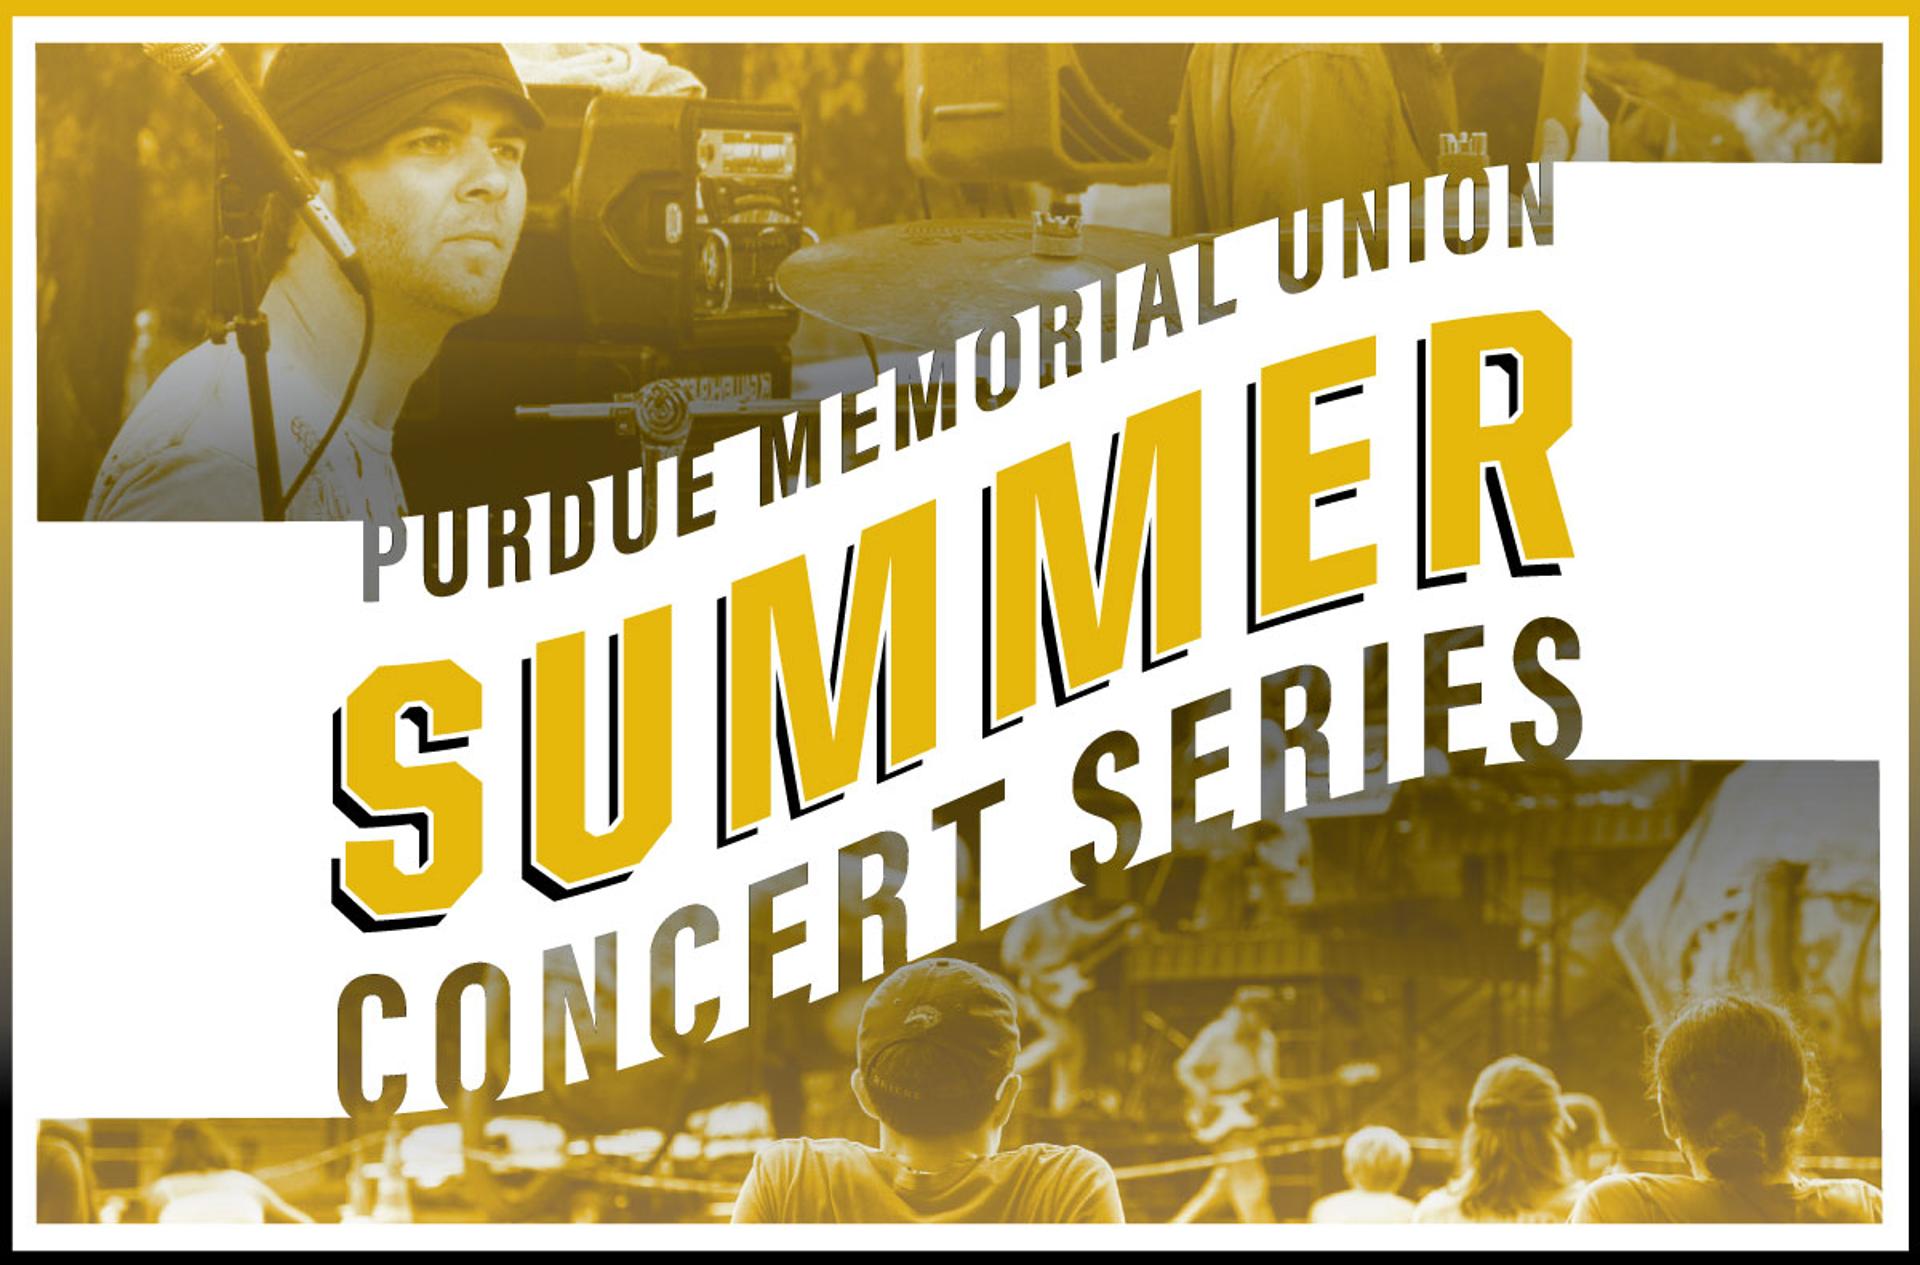 Purdue Memorial Union Summer Concert Series